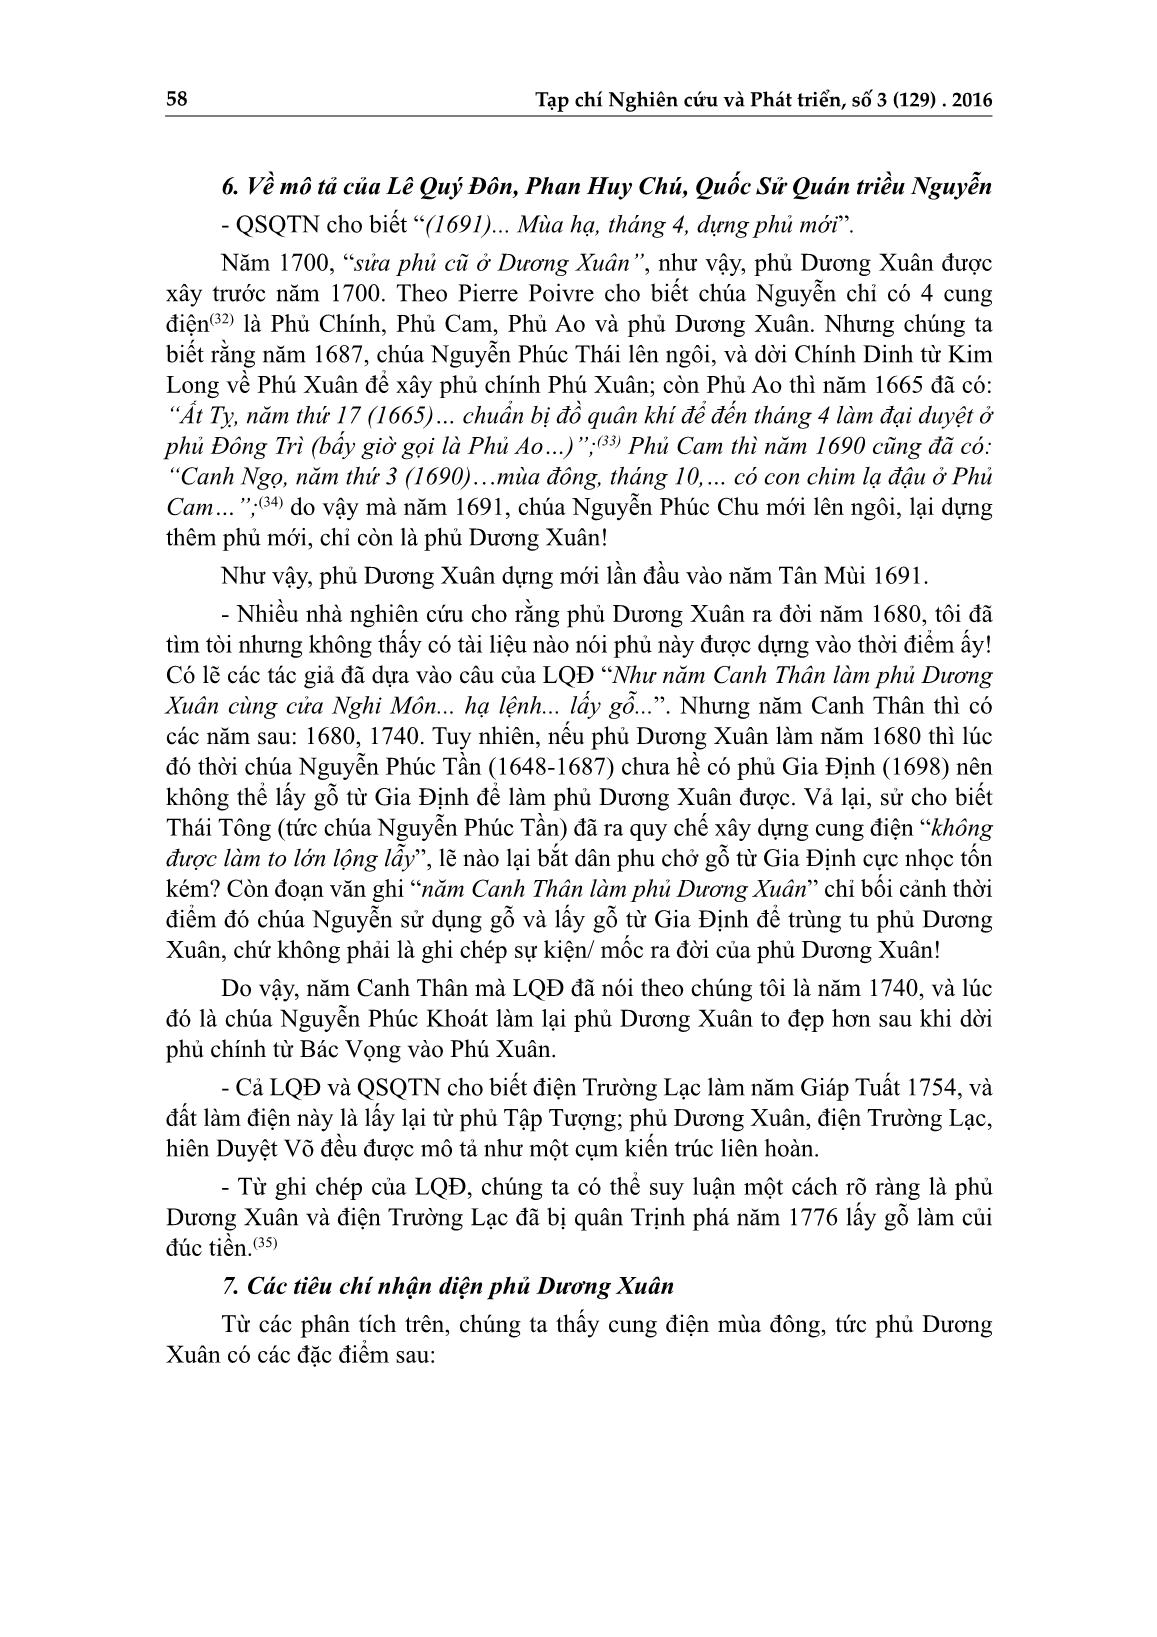 Về phủ Dương Xuân của chúa Nguyễn trang 9